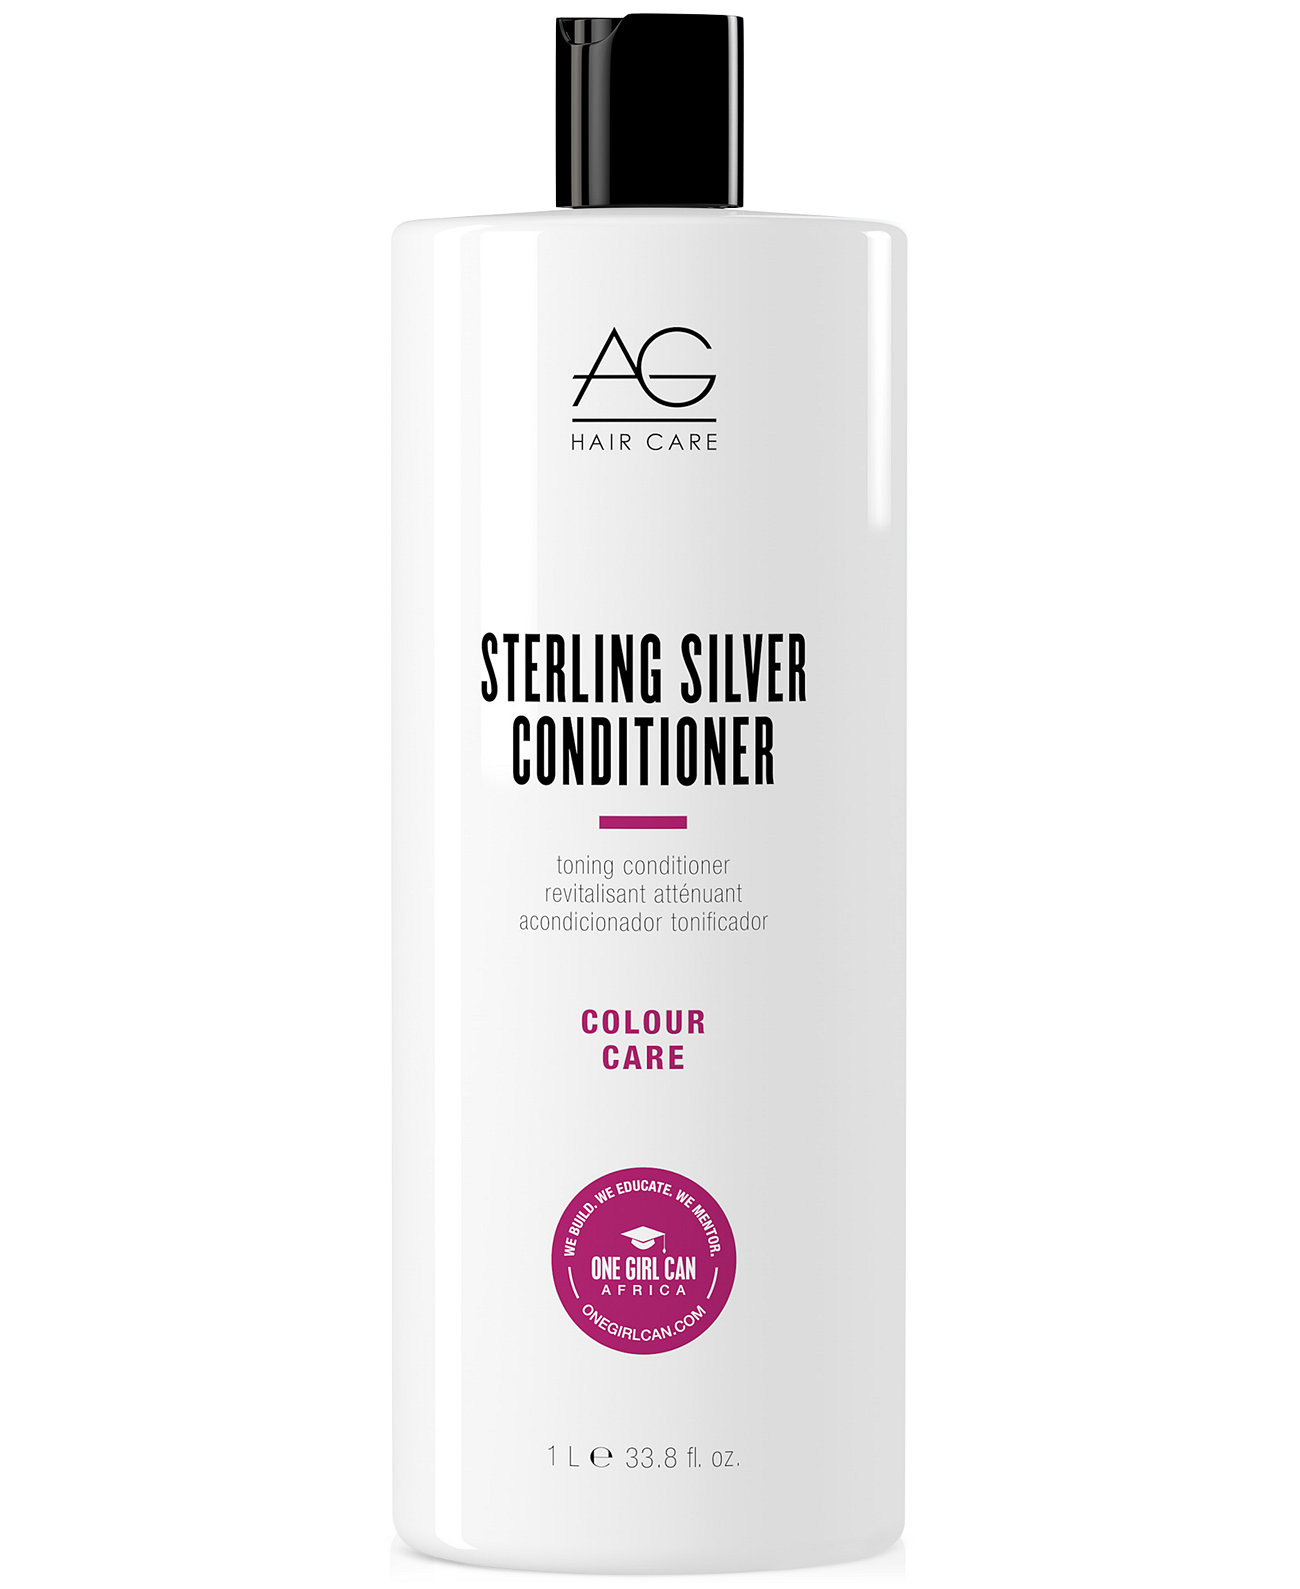 Тонизирующий кондиционер Sterling Silver, 33,8 унции. AG Hair